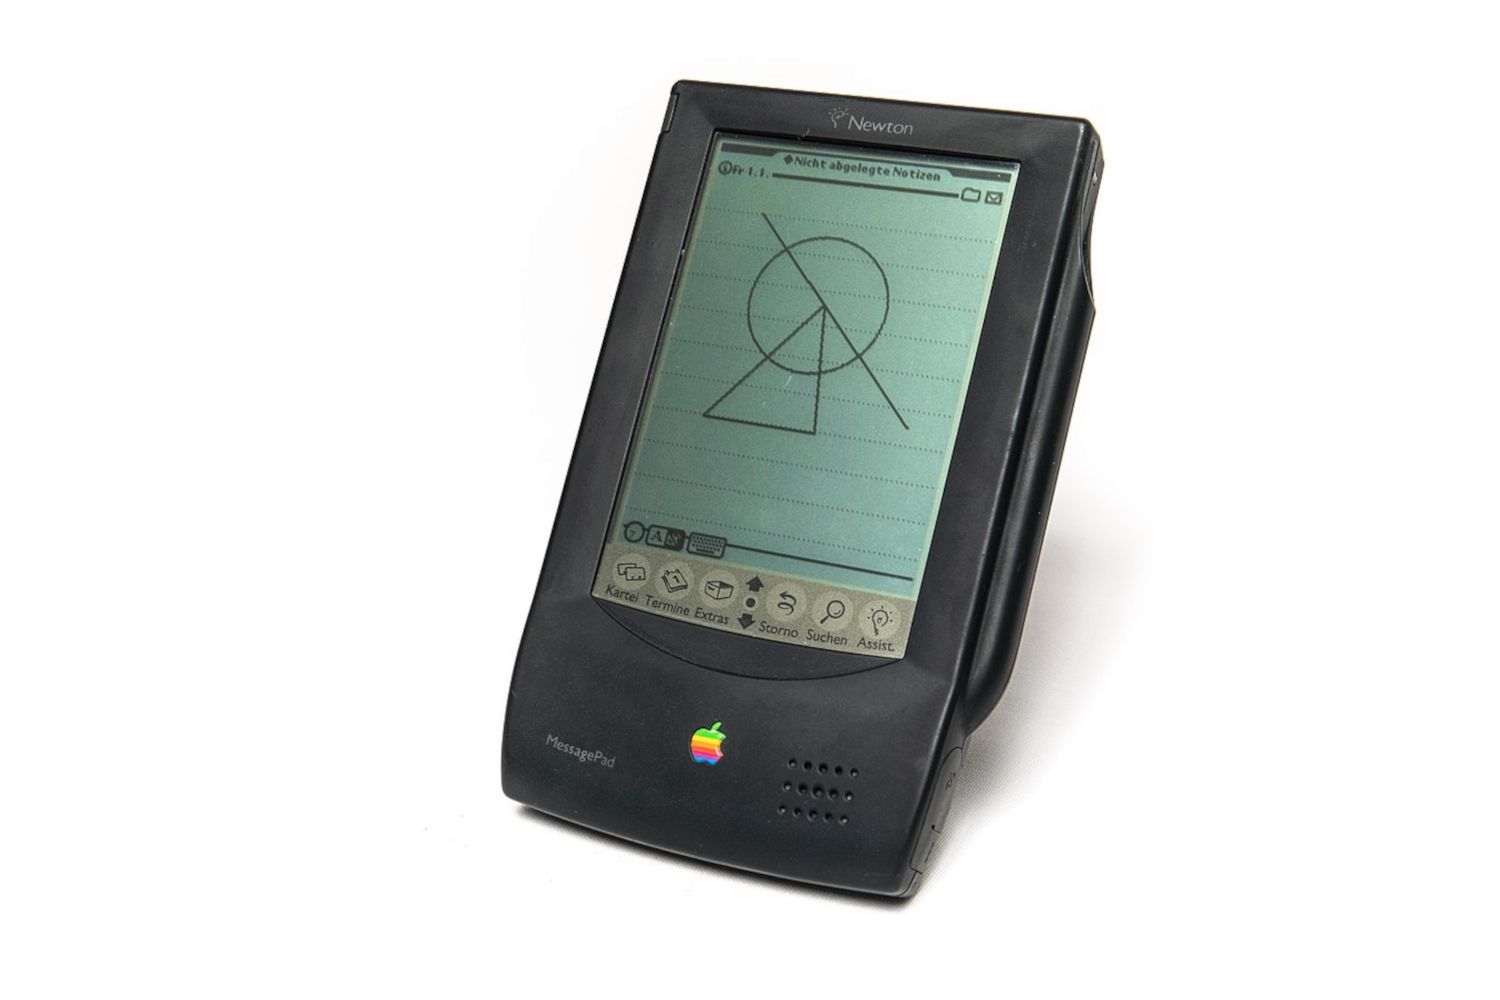 Apple Newton original visto de frente